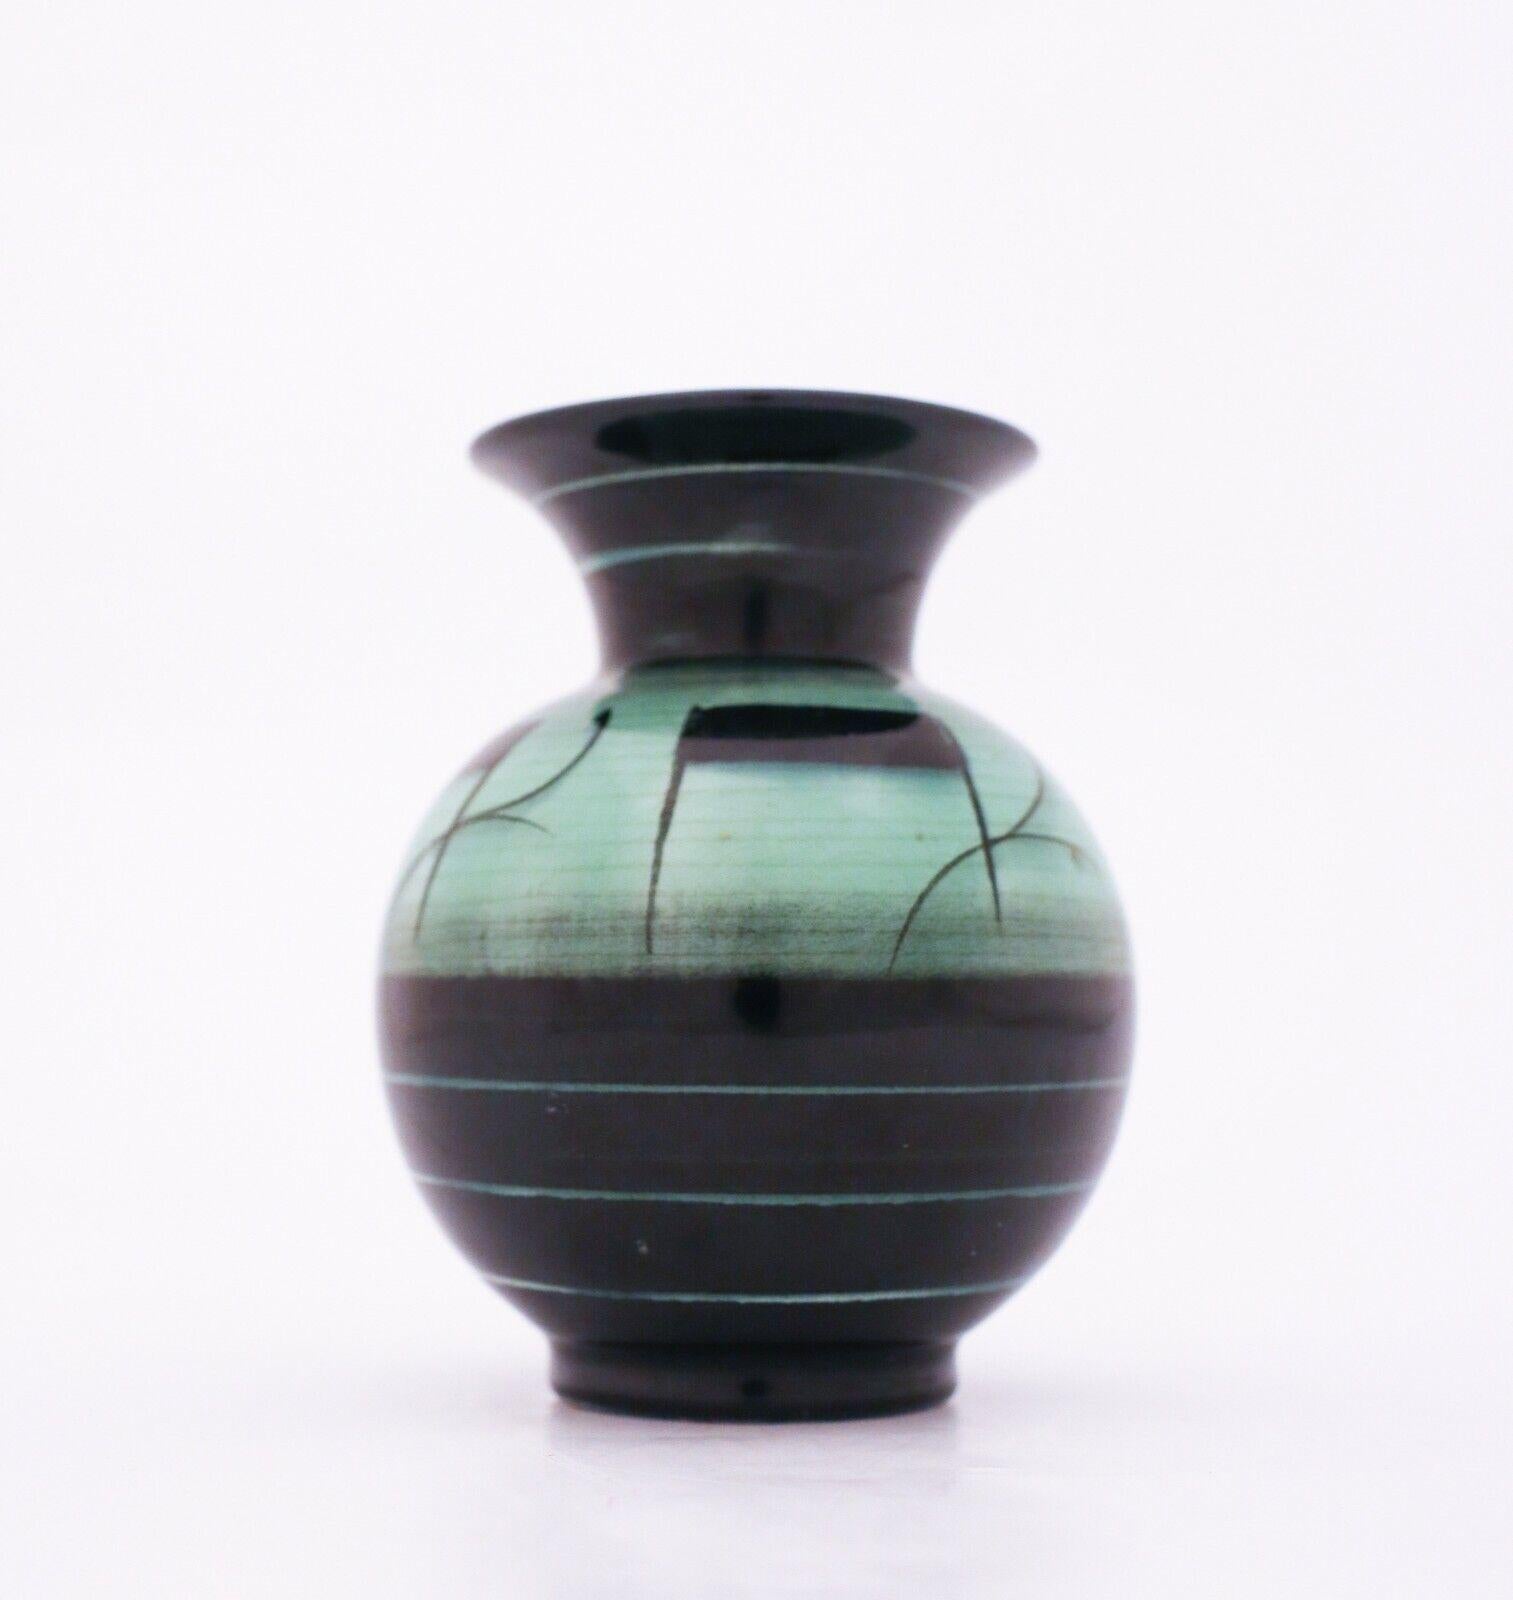 Art Déco in seiner schönsten Form! Eine schöne grün-schwarze Vase, entworfen von Ilse Claesson in den 1930er Jahren in Rörstrand, Schweden. Sie ist 11 cm hoch und in sehr gutem Zustand, abgesehen von einigen altersbedingten Craquelés in der Glasur.